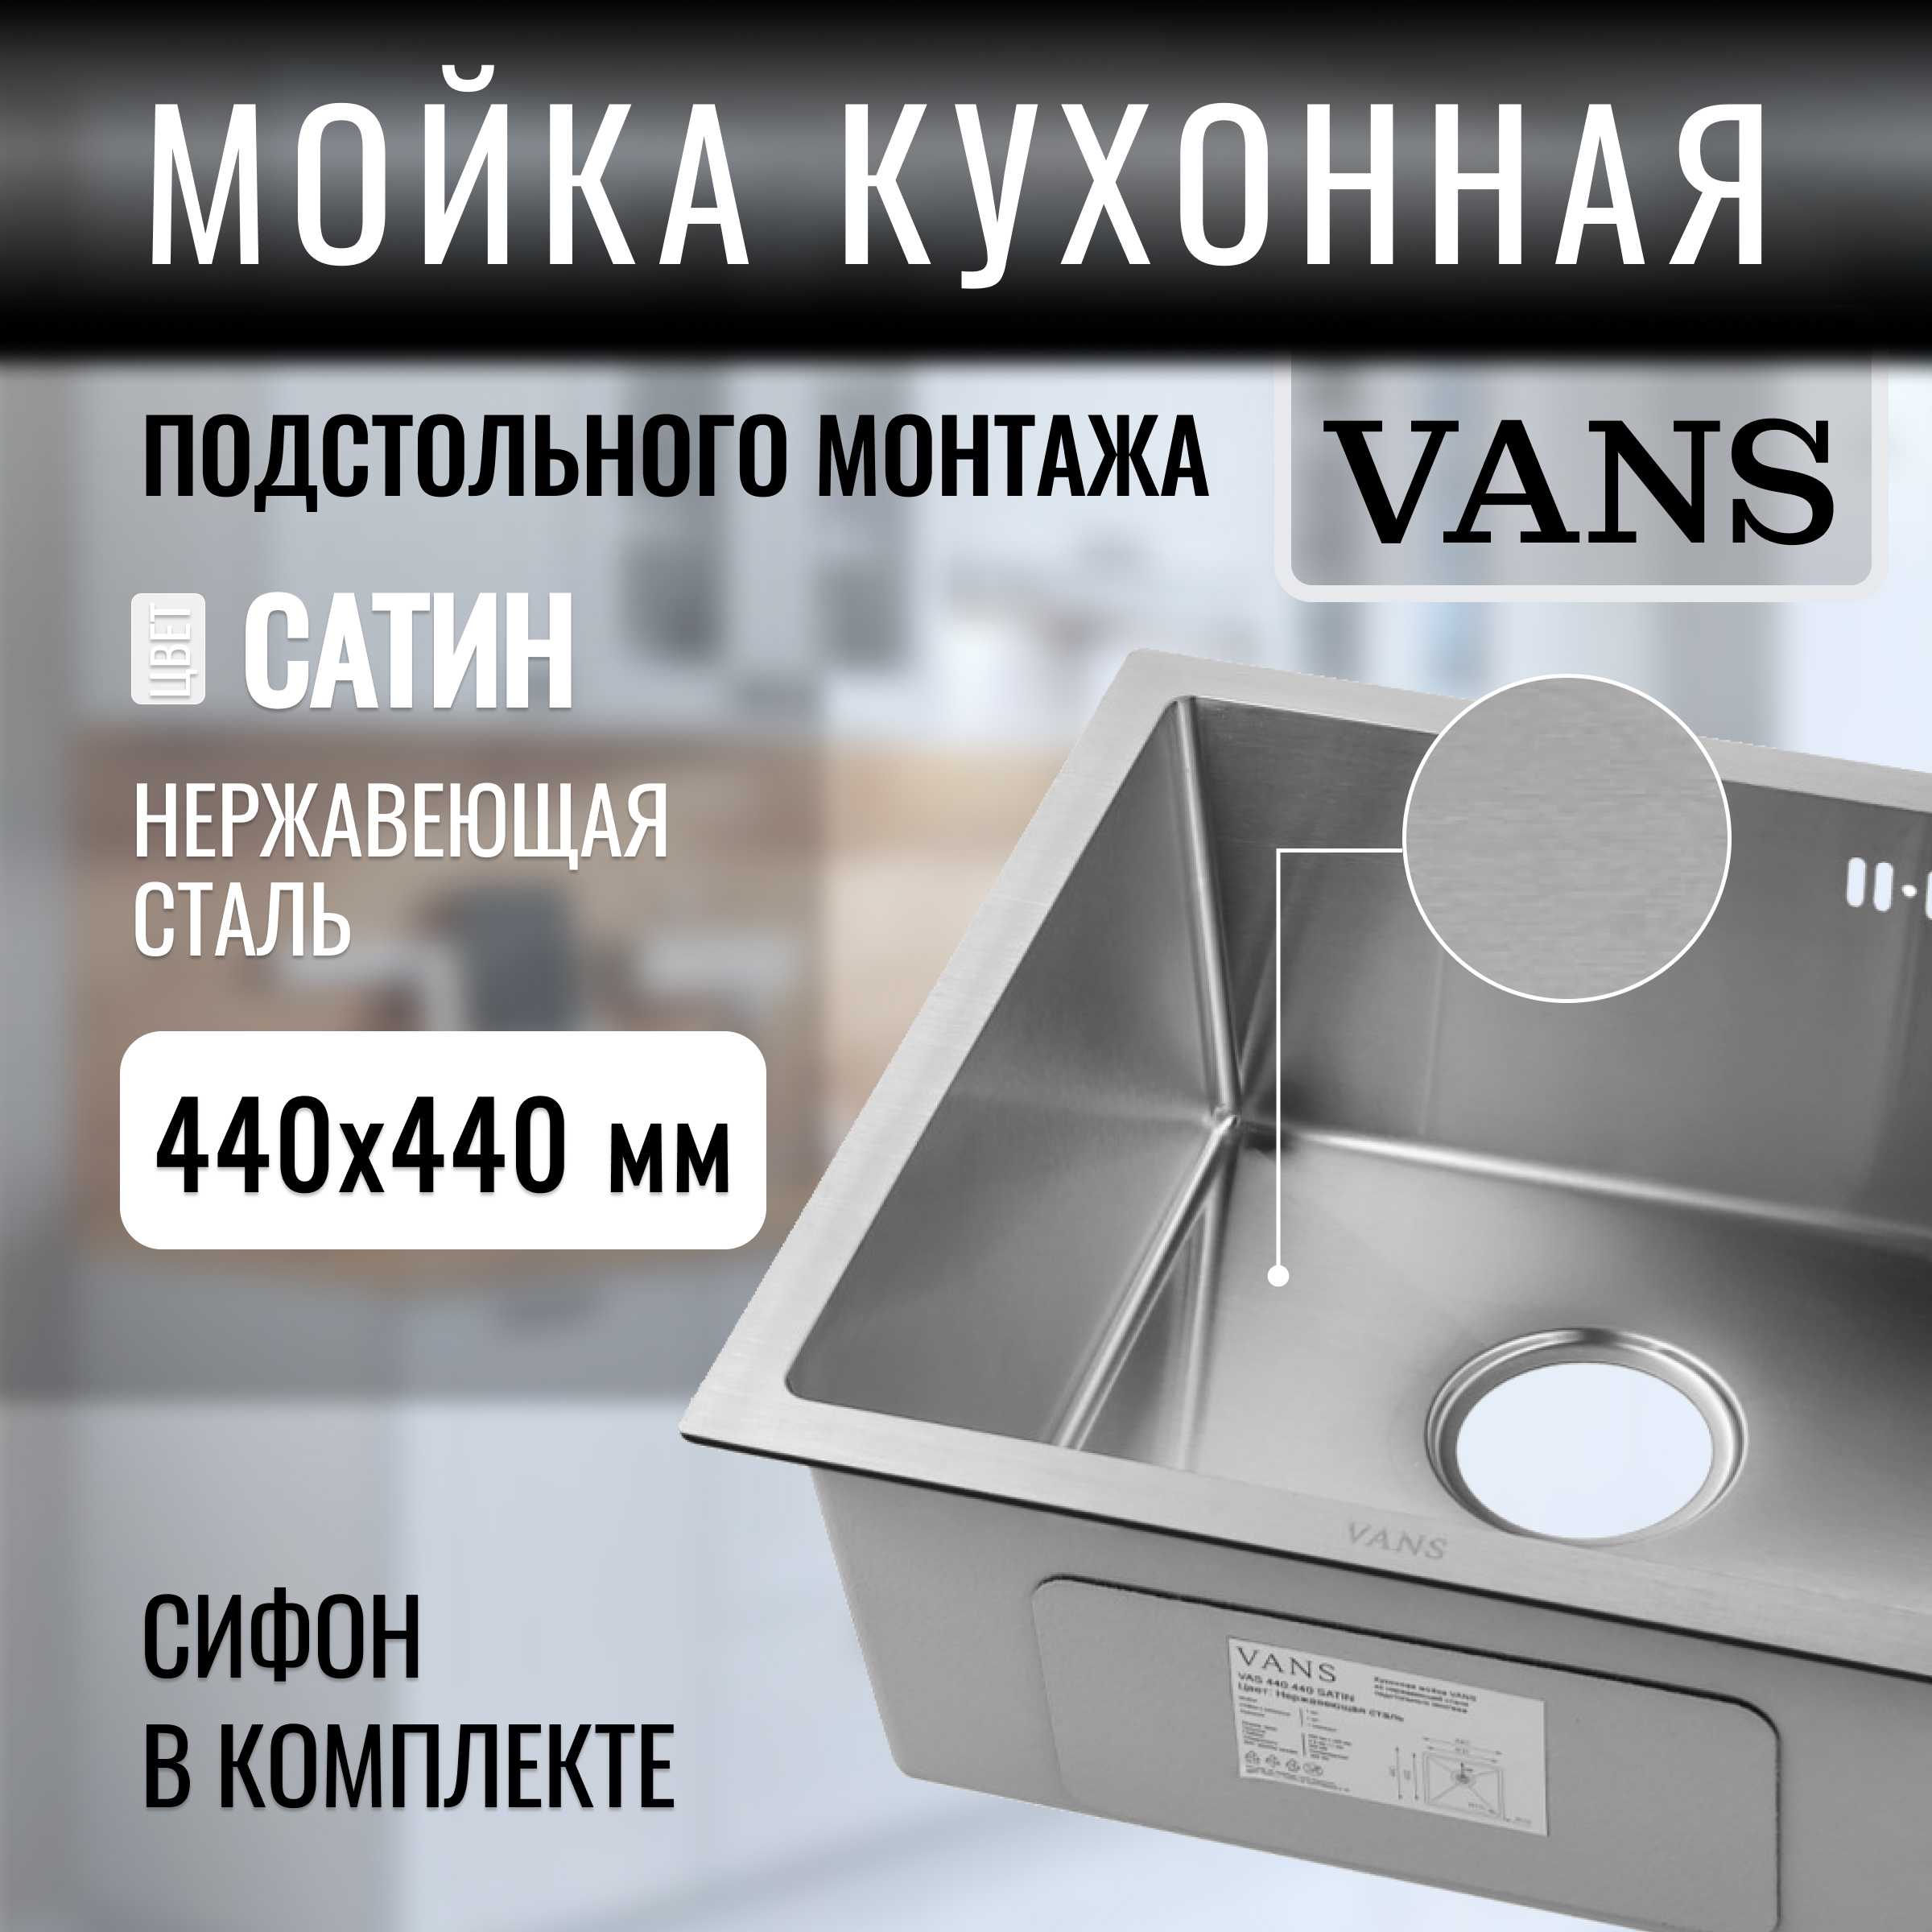 Кухонная мойка подстольный монтаж VANS 440*440*200 мм Satin